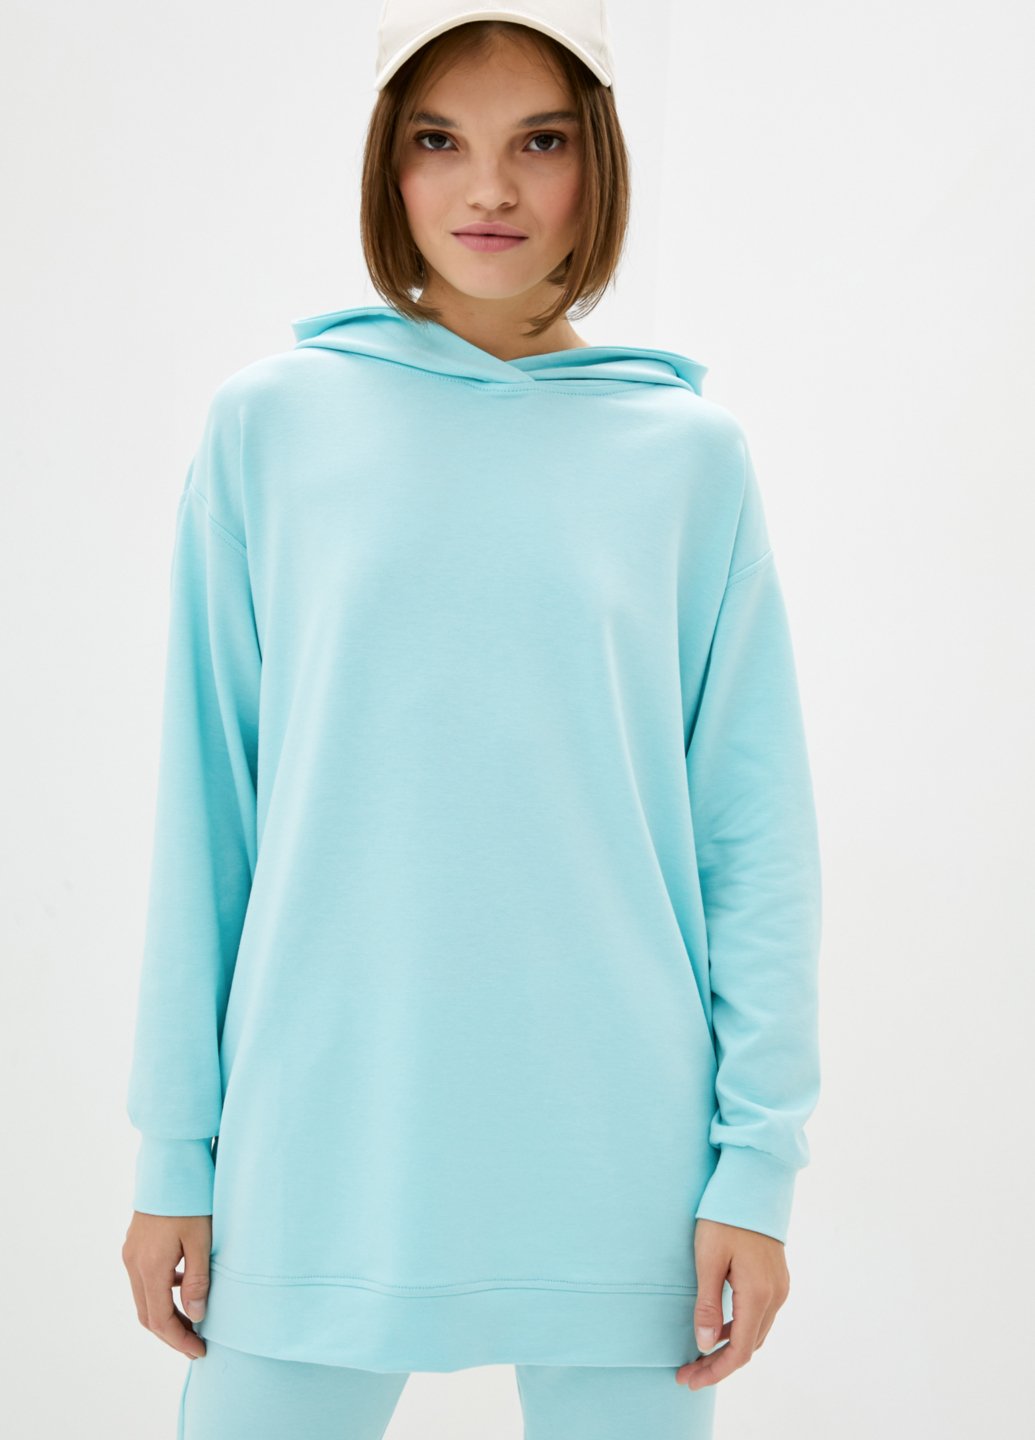 Купить Голубое оверсайз женское худи Merlini Палермо 110000025, размер 42-44 в интернет-магазине